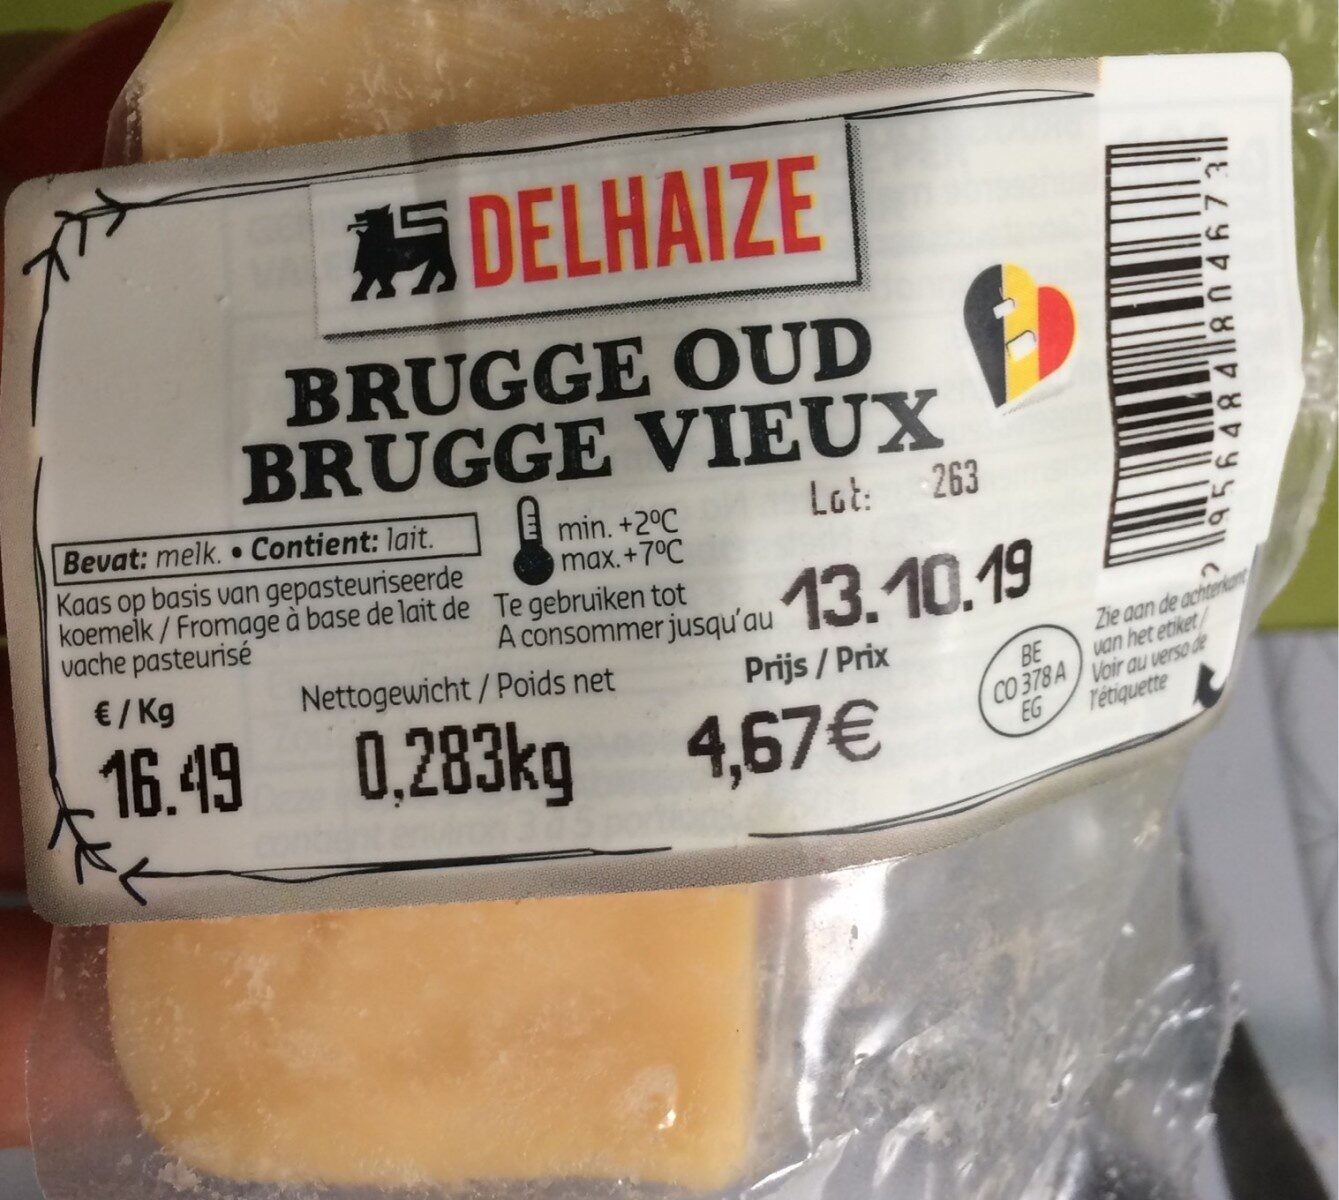 Brugge vieux - Product